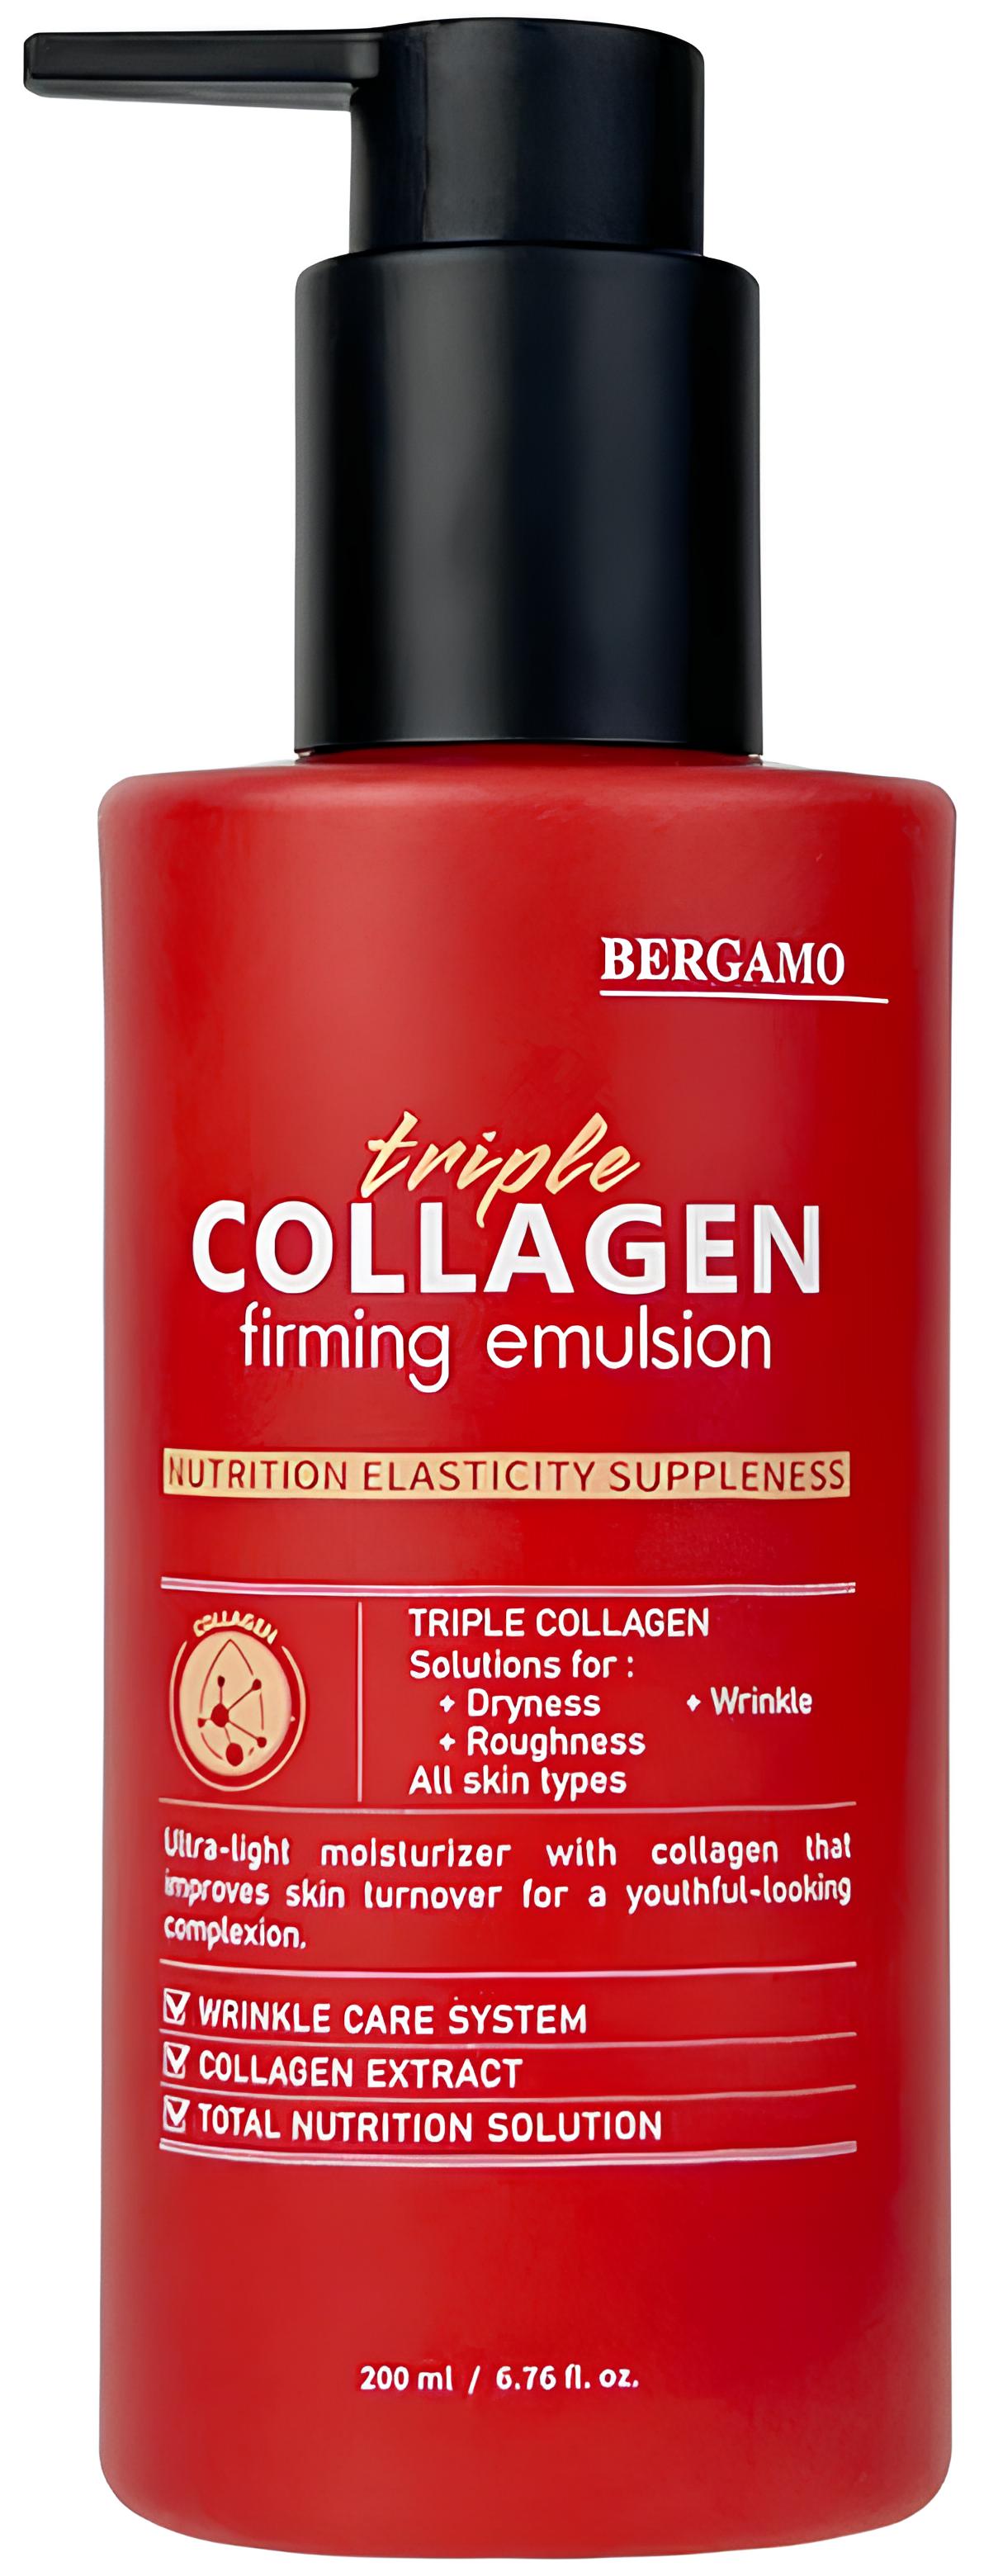 Укрепляющая эмульсия с тройным коллагеном Bergamo Triple Collagen Firming Emulsion 200 мл питательная эмульсия collagen nutrition emulsion